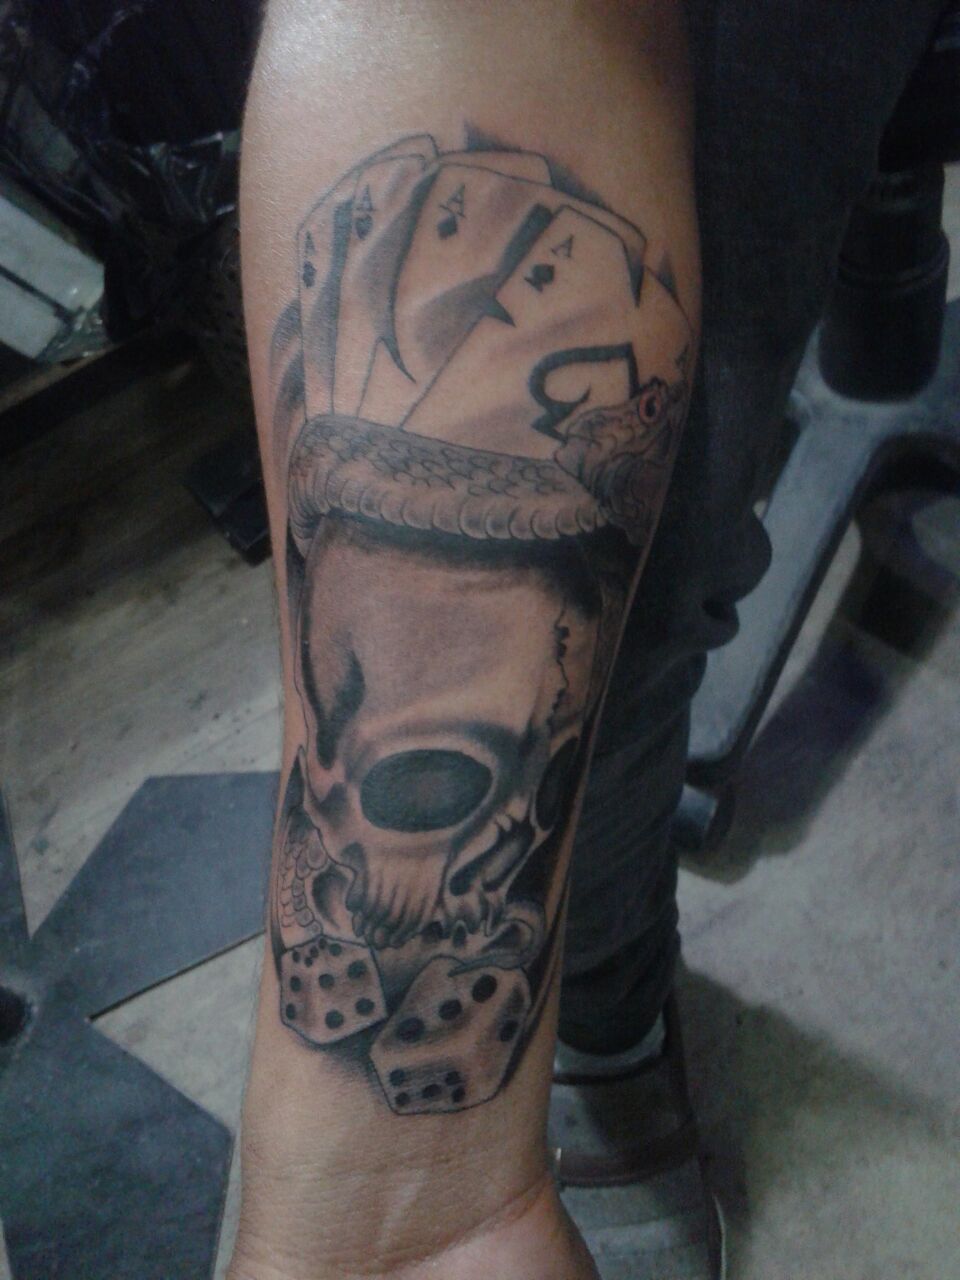 Tattoo flat 50% discount Ink mink tattooz M2K Rohini sec. 3 New Delhi |  Ink, M2k, Cool tattoos